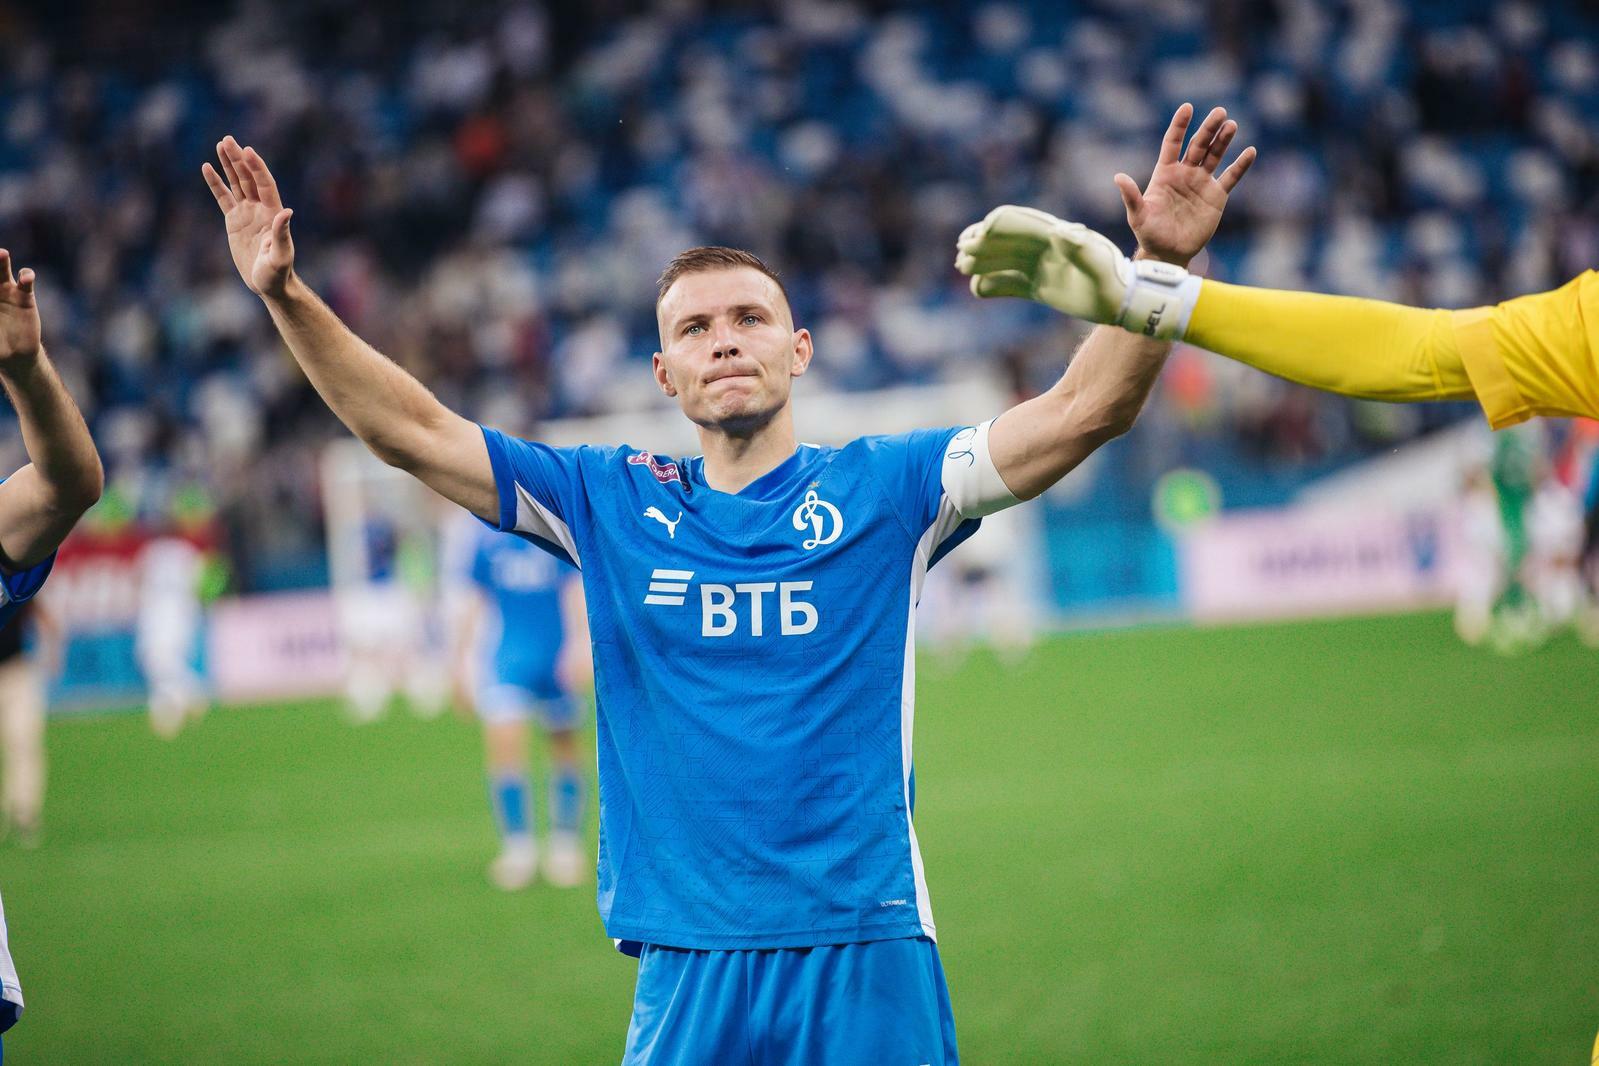 Noticias del FC "Dynamo" Moscú | Sergey Parshivlyuk: "Aprovecho cualquier oportunidad para ayudar a los jóvenes". Sitio oficial del club Dynamo.